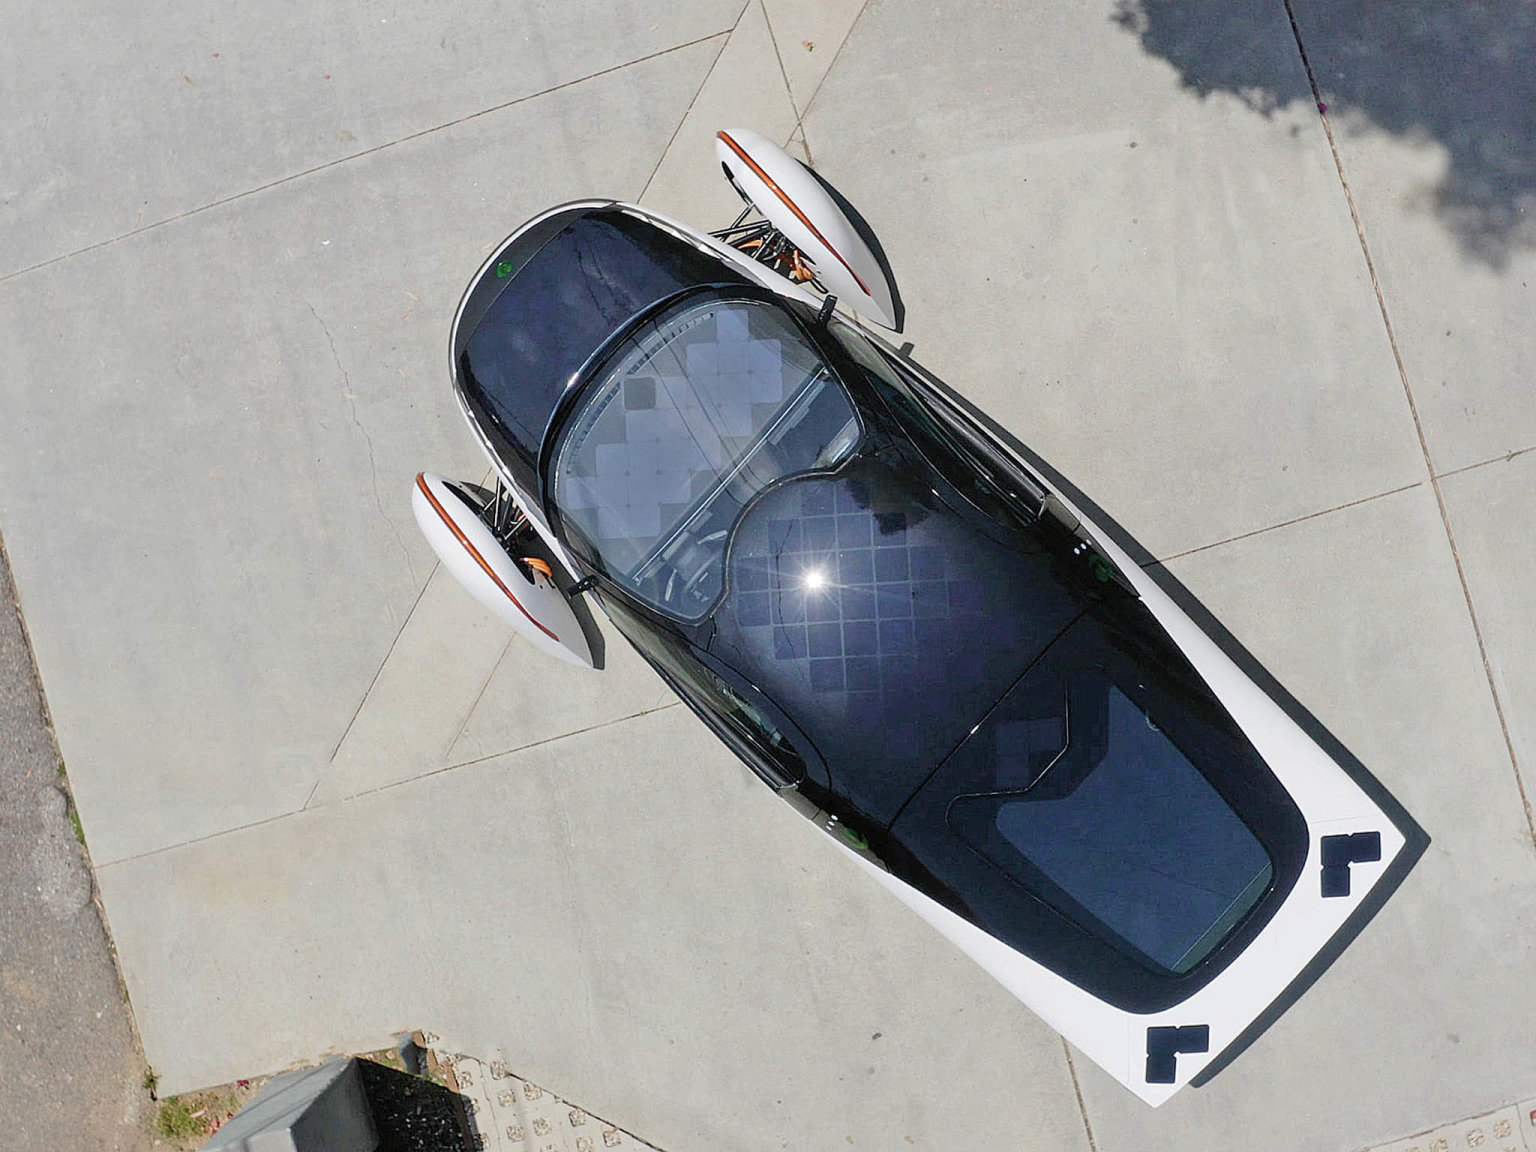 Tøíkolový solární elektromobil od Aptery vypadá futuristicky, ale je funkèní.